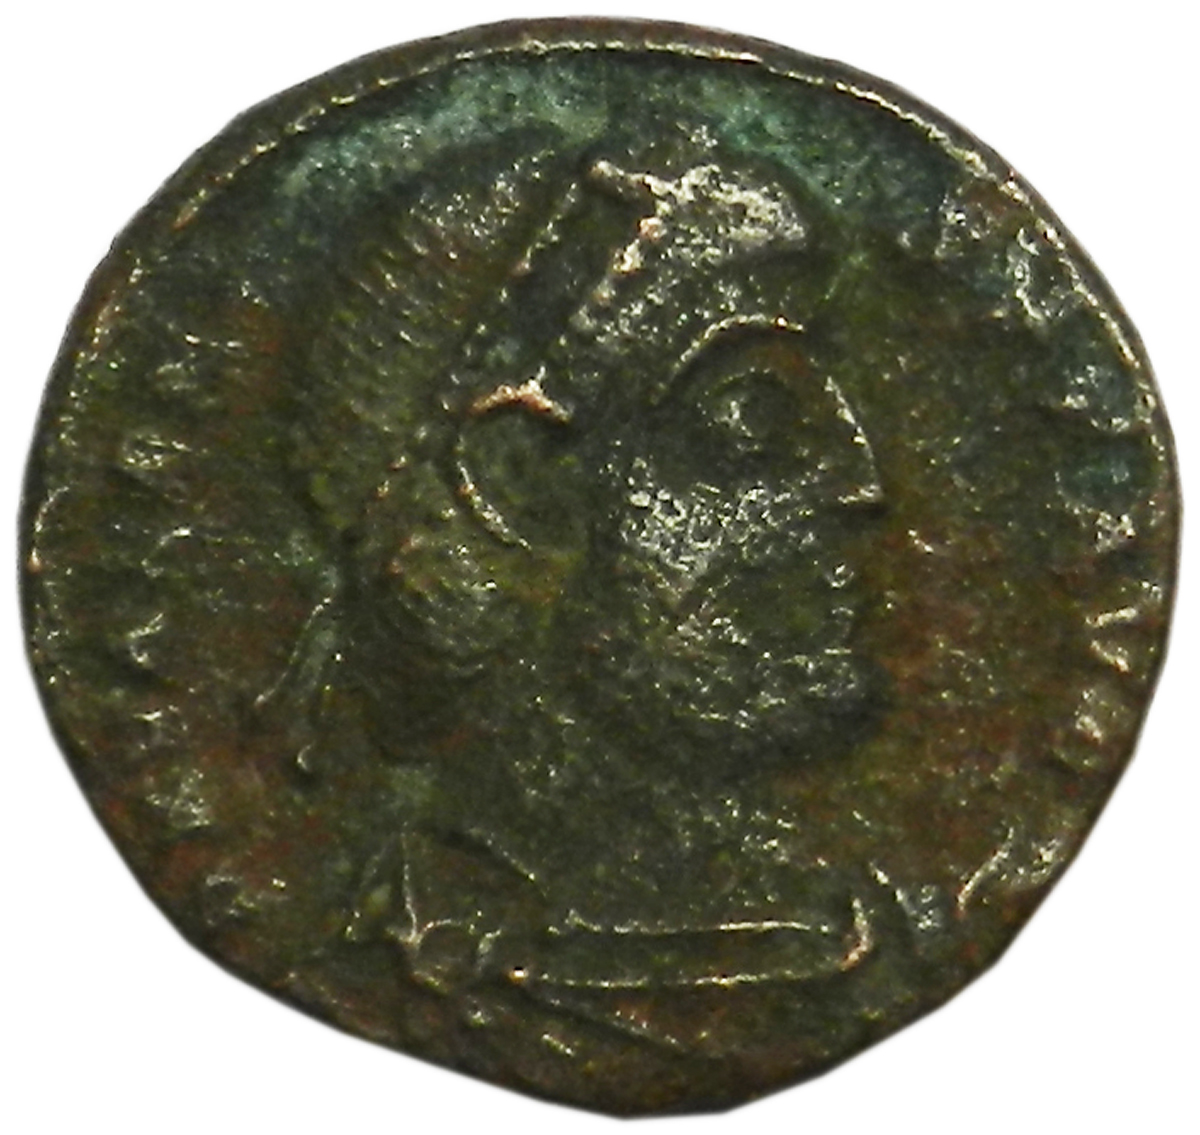 Монета античная. Валентиниан I, 364-375 гг. Медь. Античный Рим (Император)